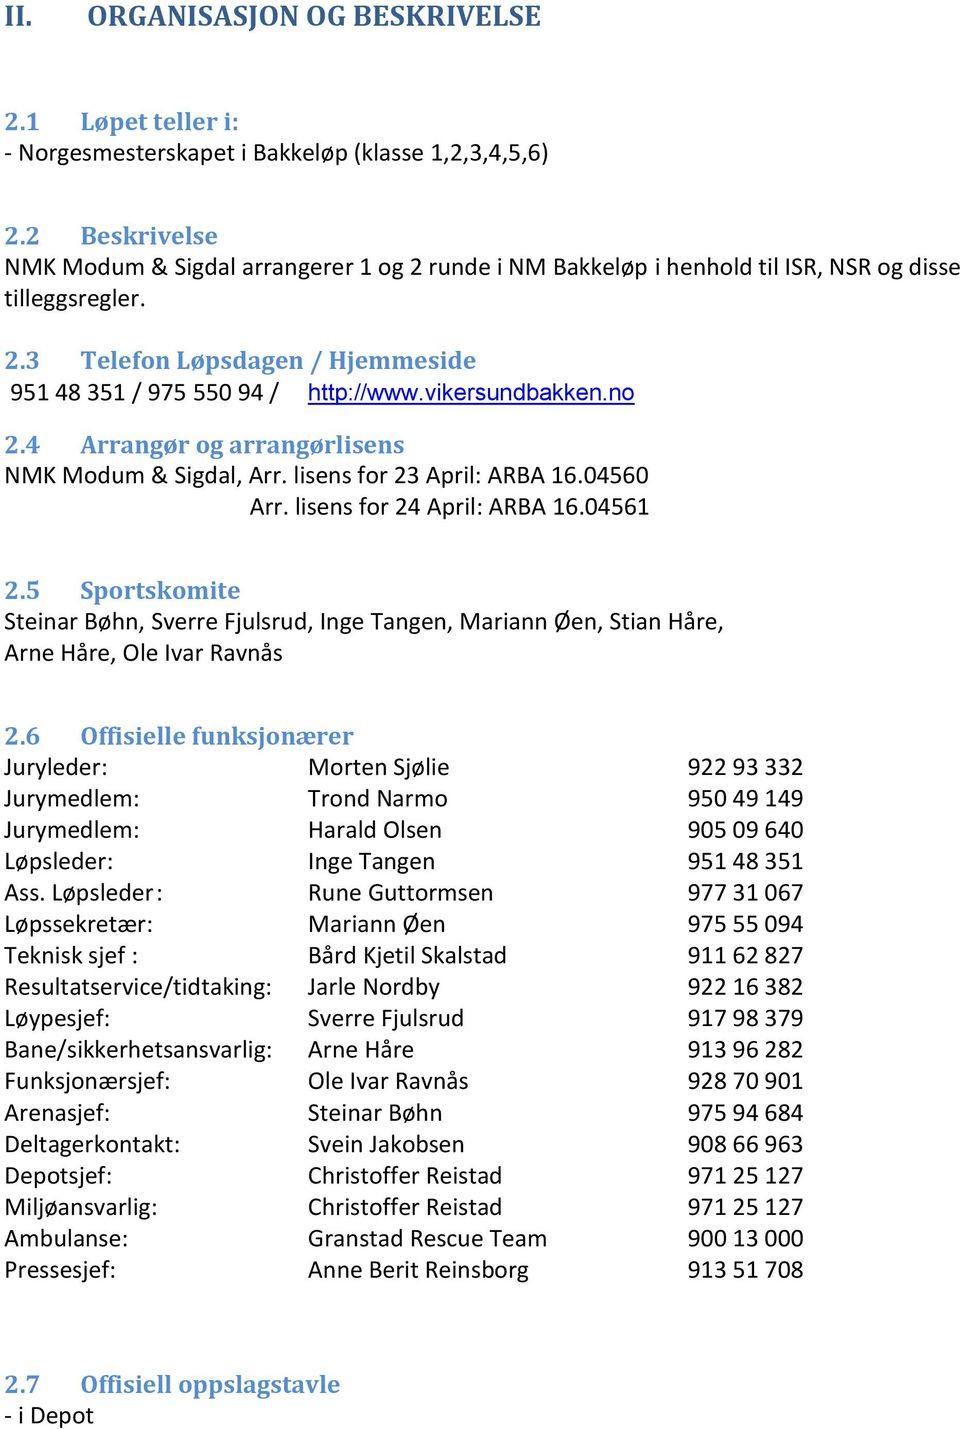 vikersundbakken.no 2.4 Arrangør og arrangørlisens NMK Modum & Sigdal, Arr. lisens for 23 April: ARBA 16.04560 Arr. lisens for 24 April: ARBA 16.04561 2.